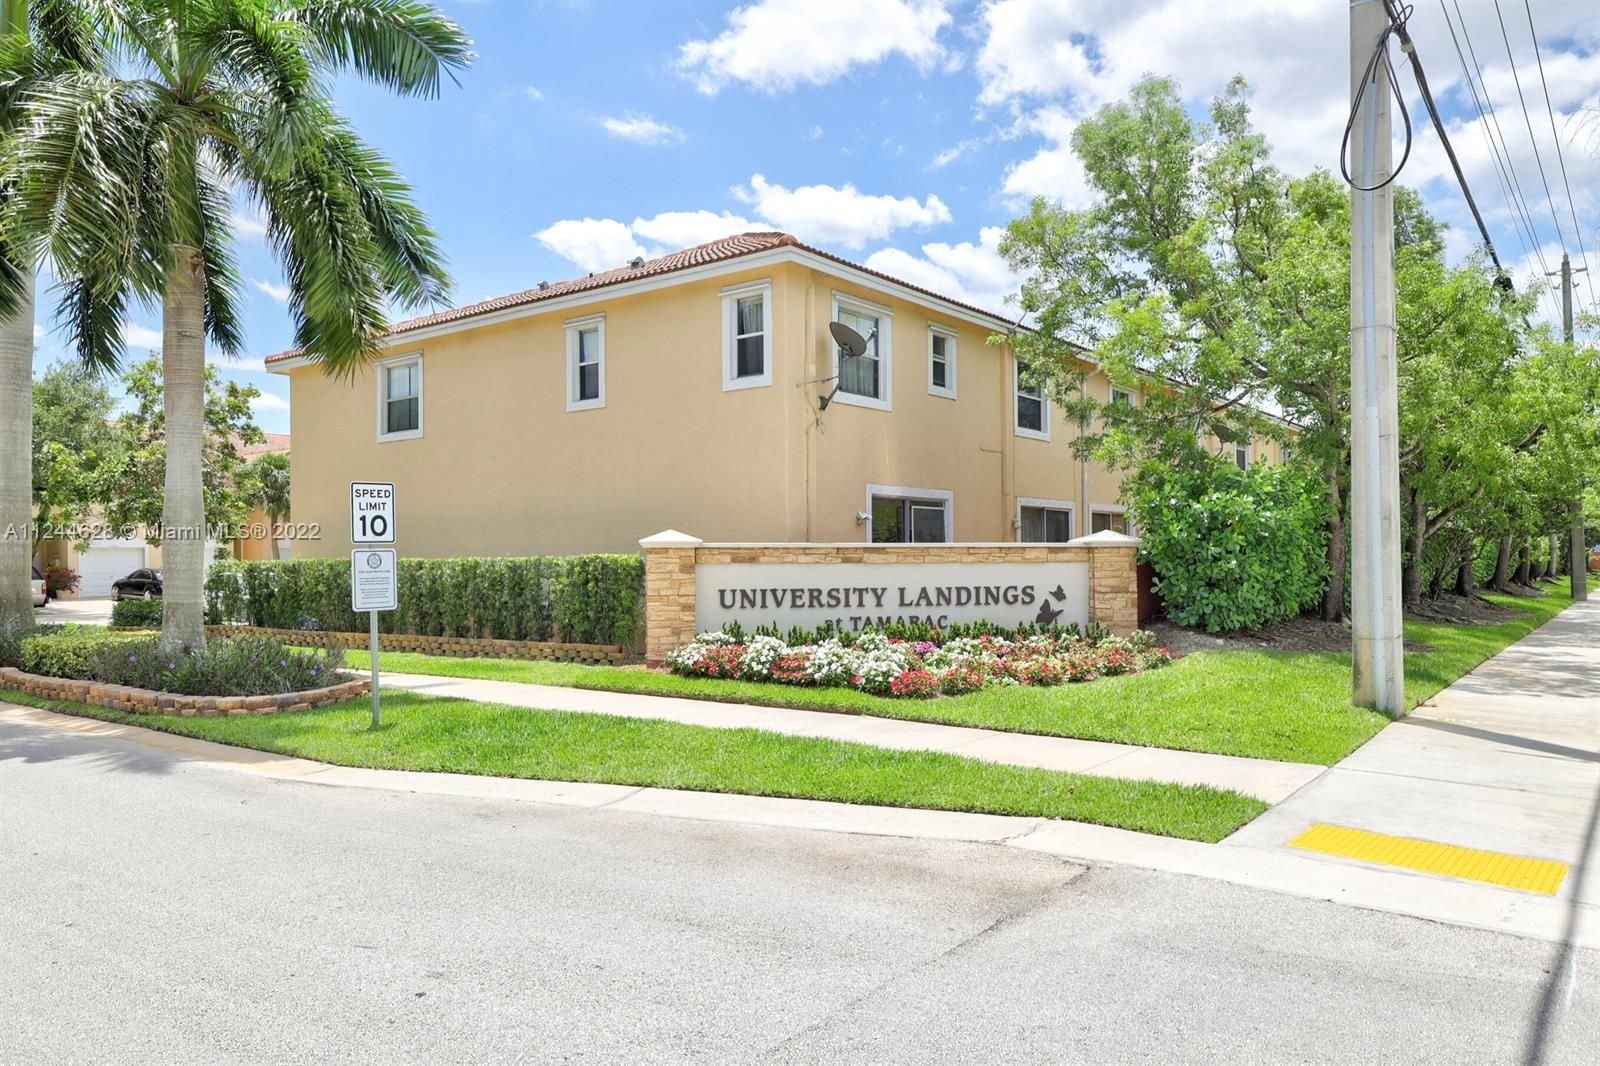 Real estate property located at 6320 Landings Way #6320, Broward County, Tamarac, FL